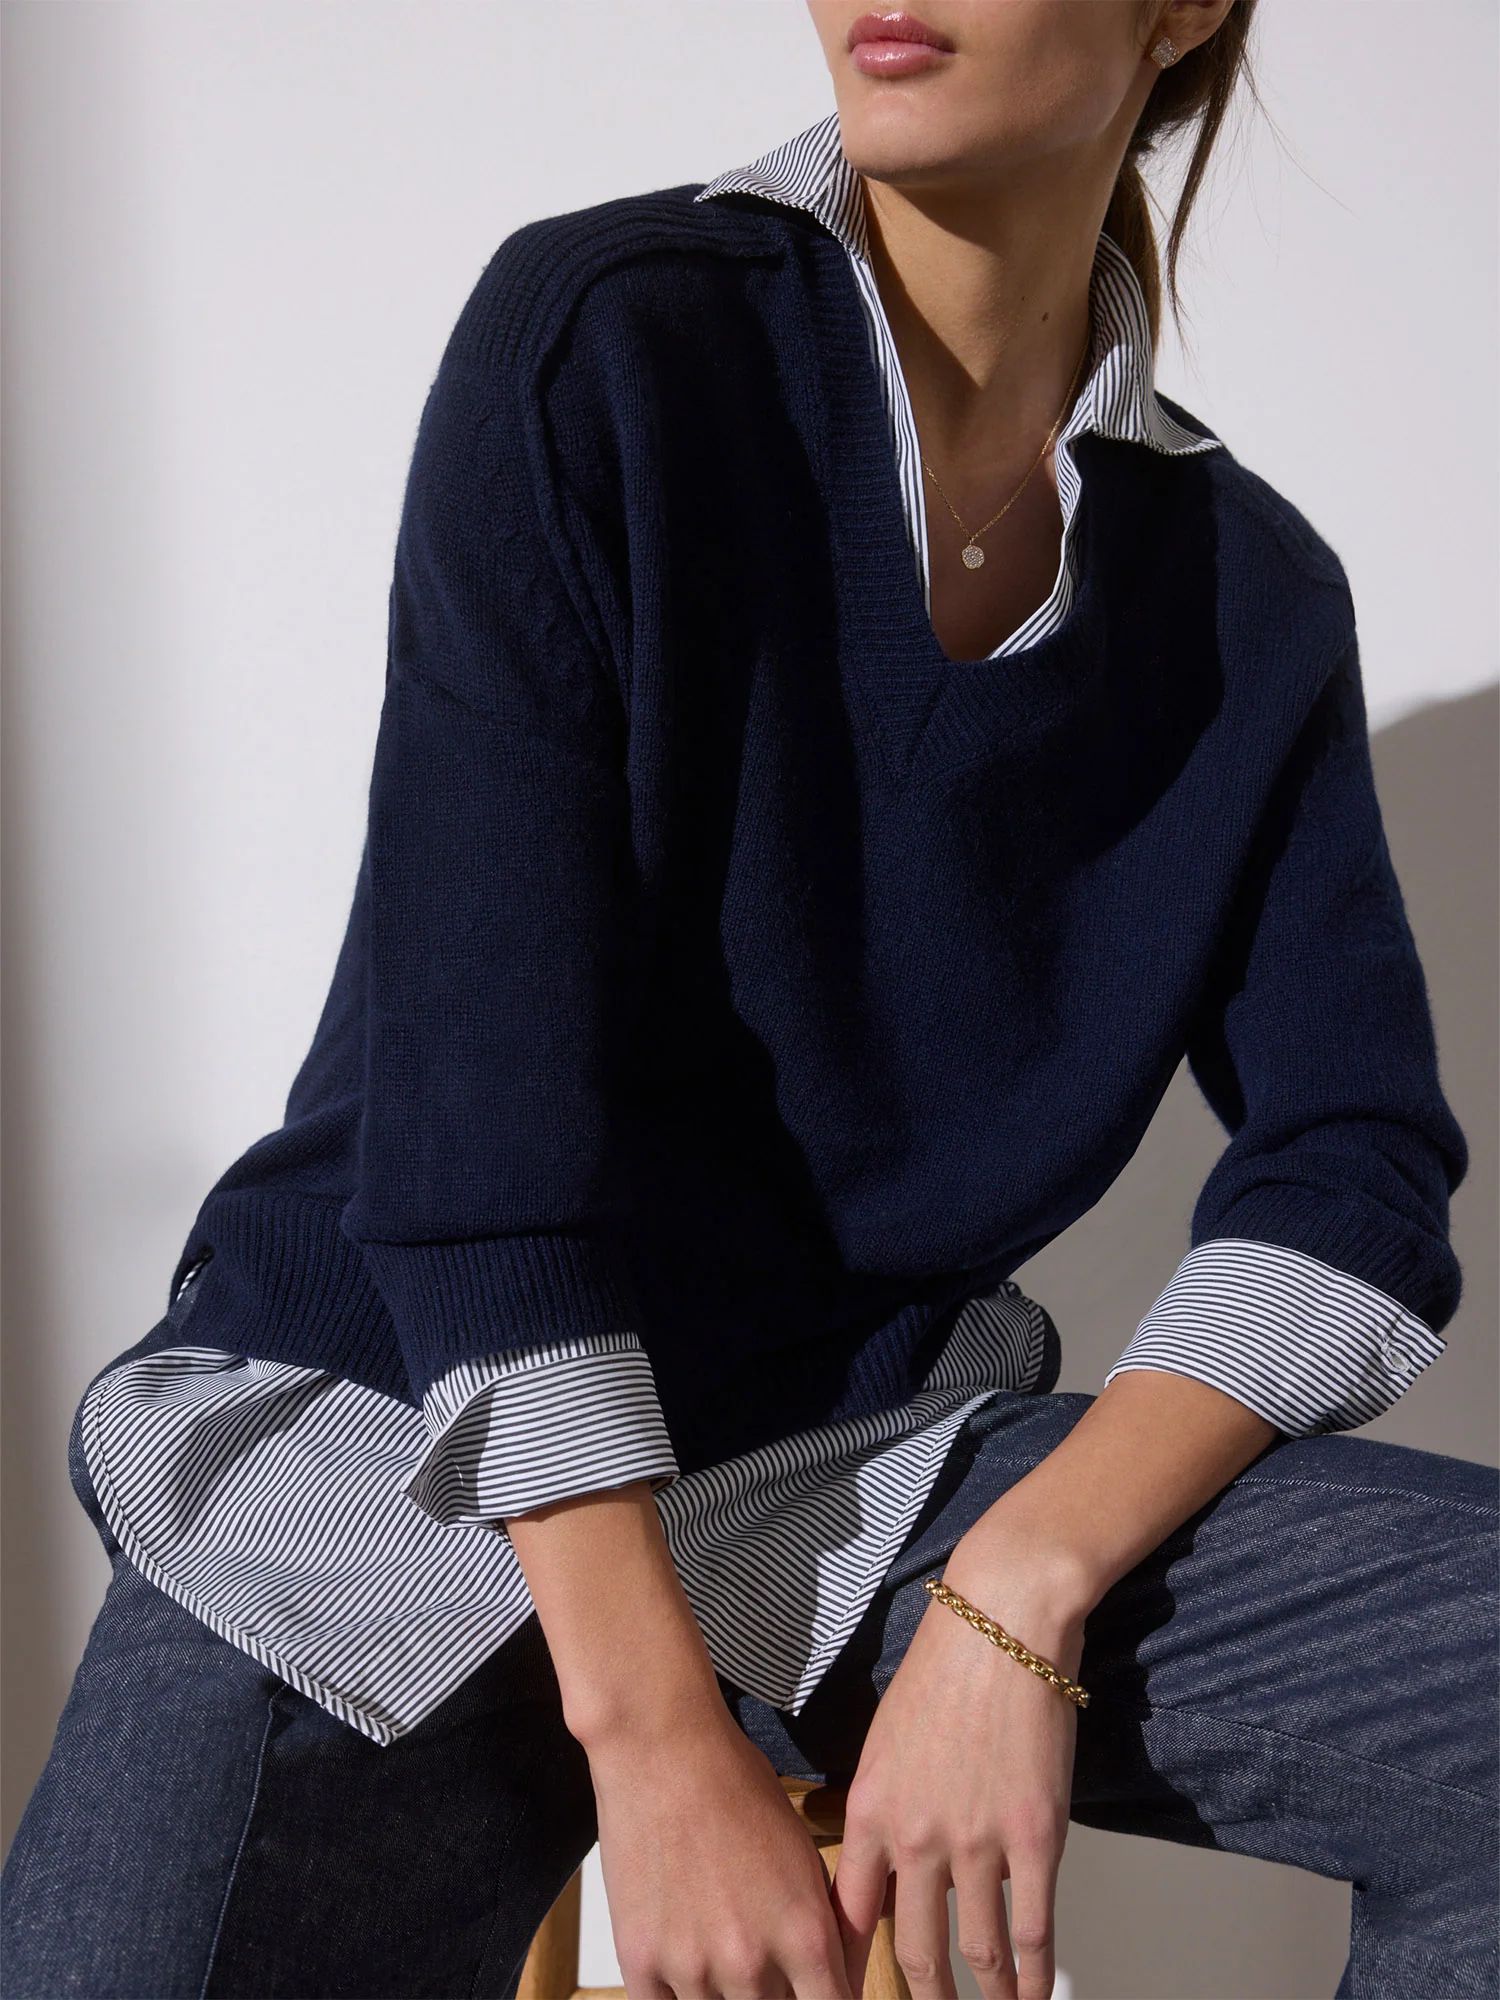 Brochu Walker | Women's Layered V-neck Pullover Sweater in Navy with Stripe Woven | Brochu Walker